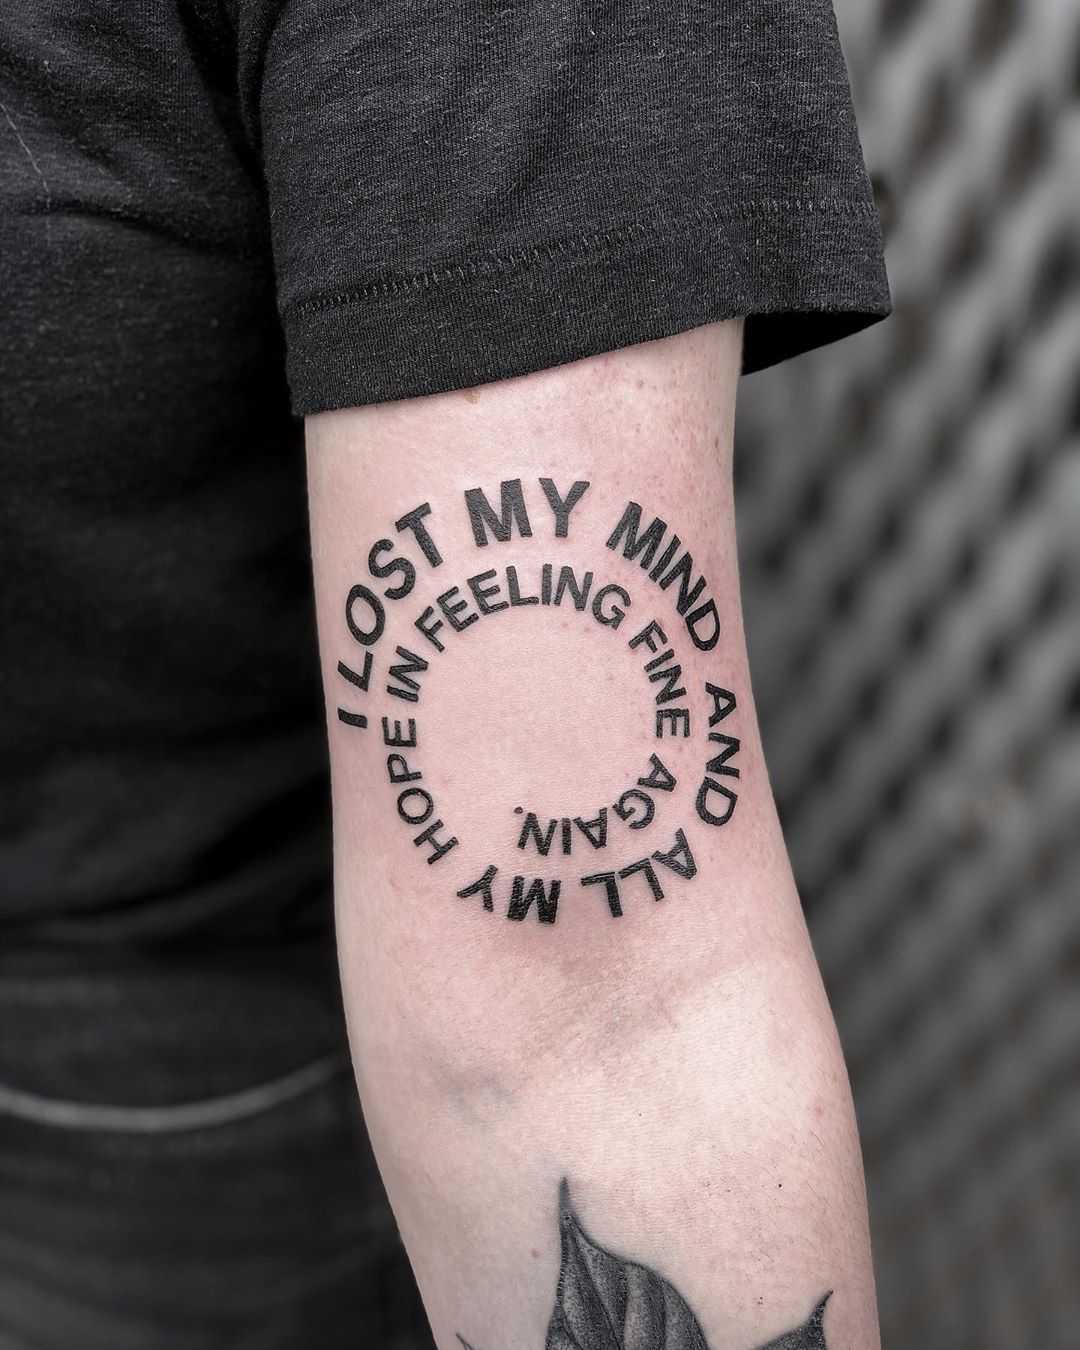 I lost my mind tattoo by Loz McLean